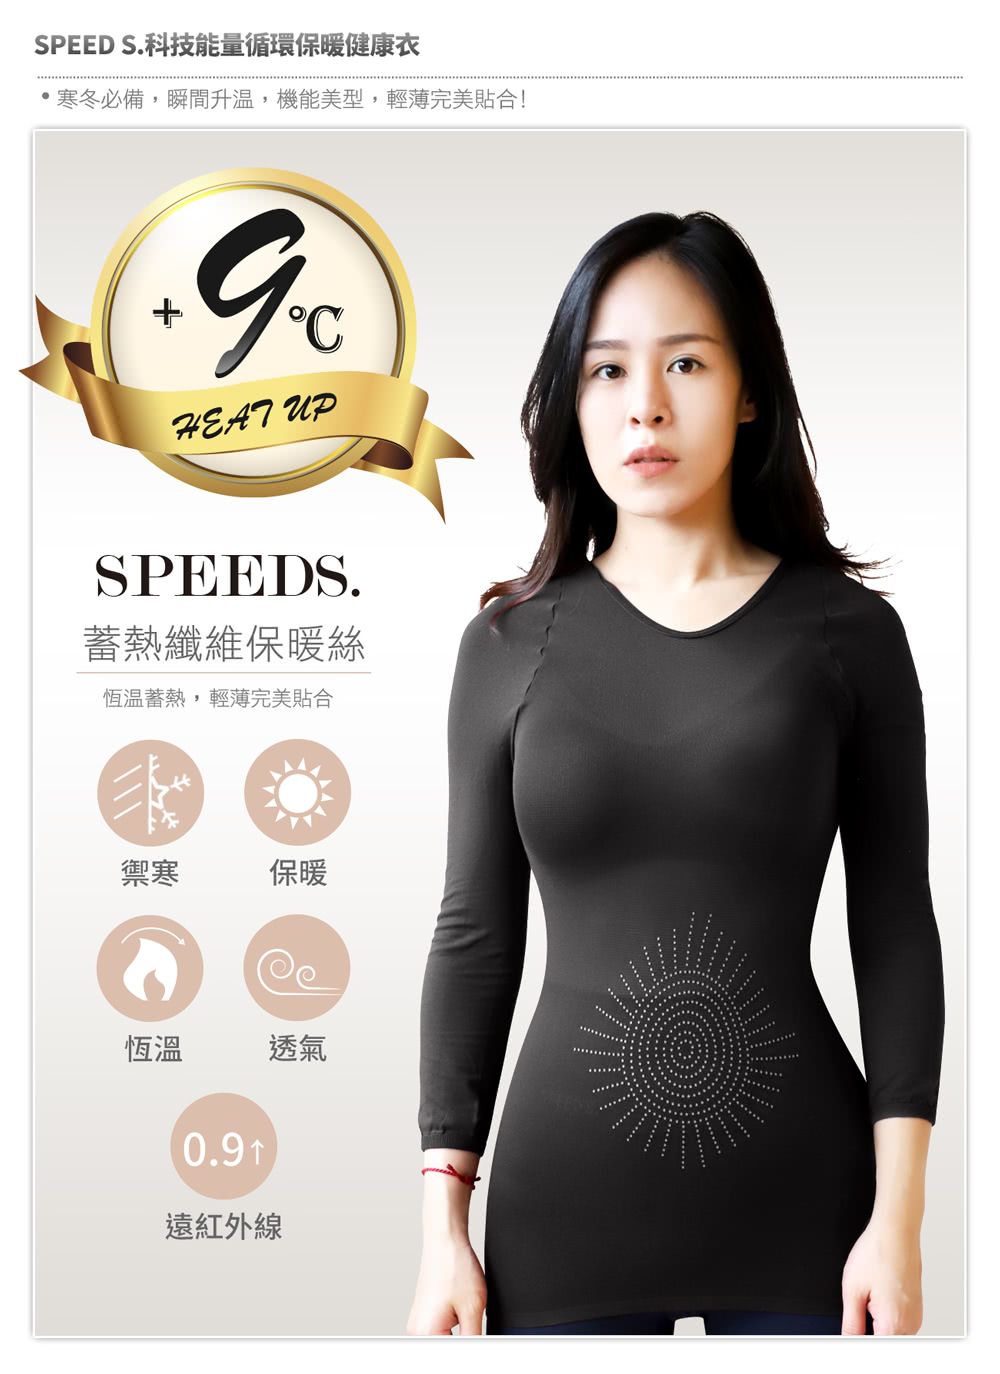 SPEED S. 科技能量循環保暖健康衣*8件(顏色隨機) 